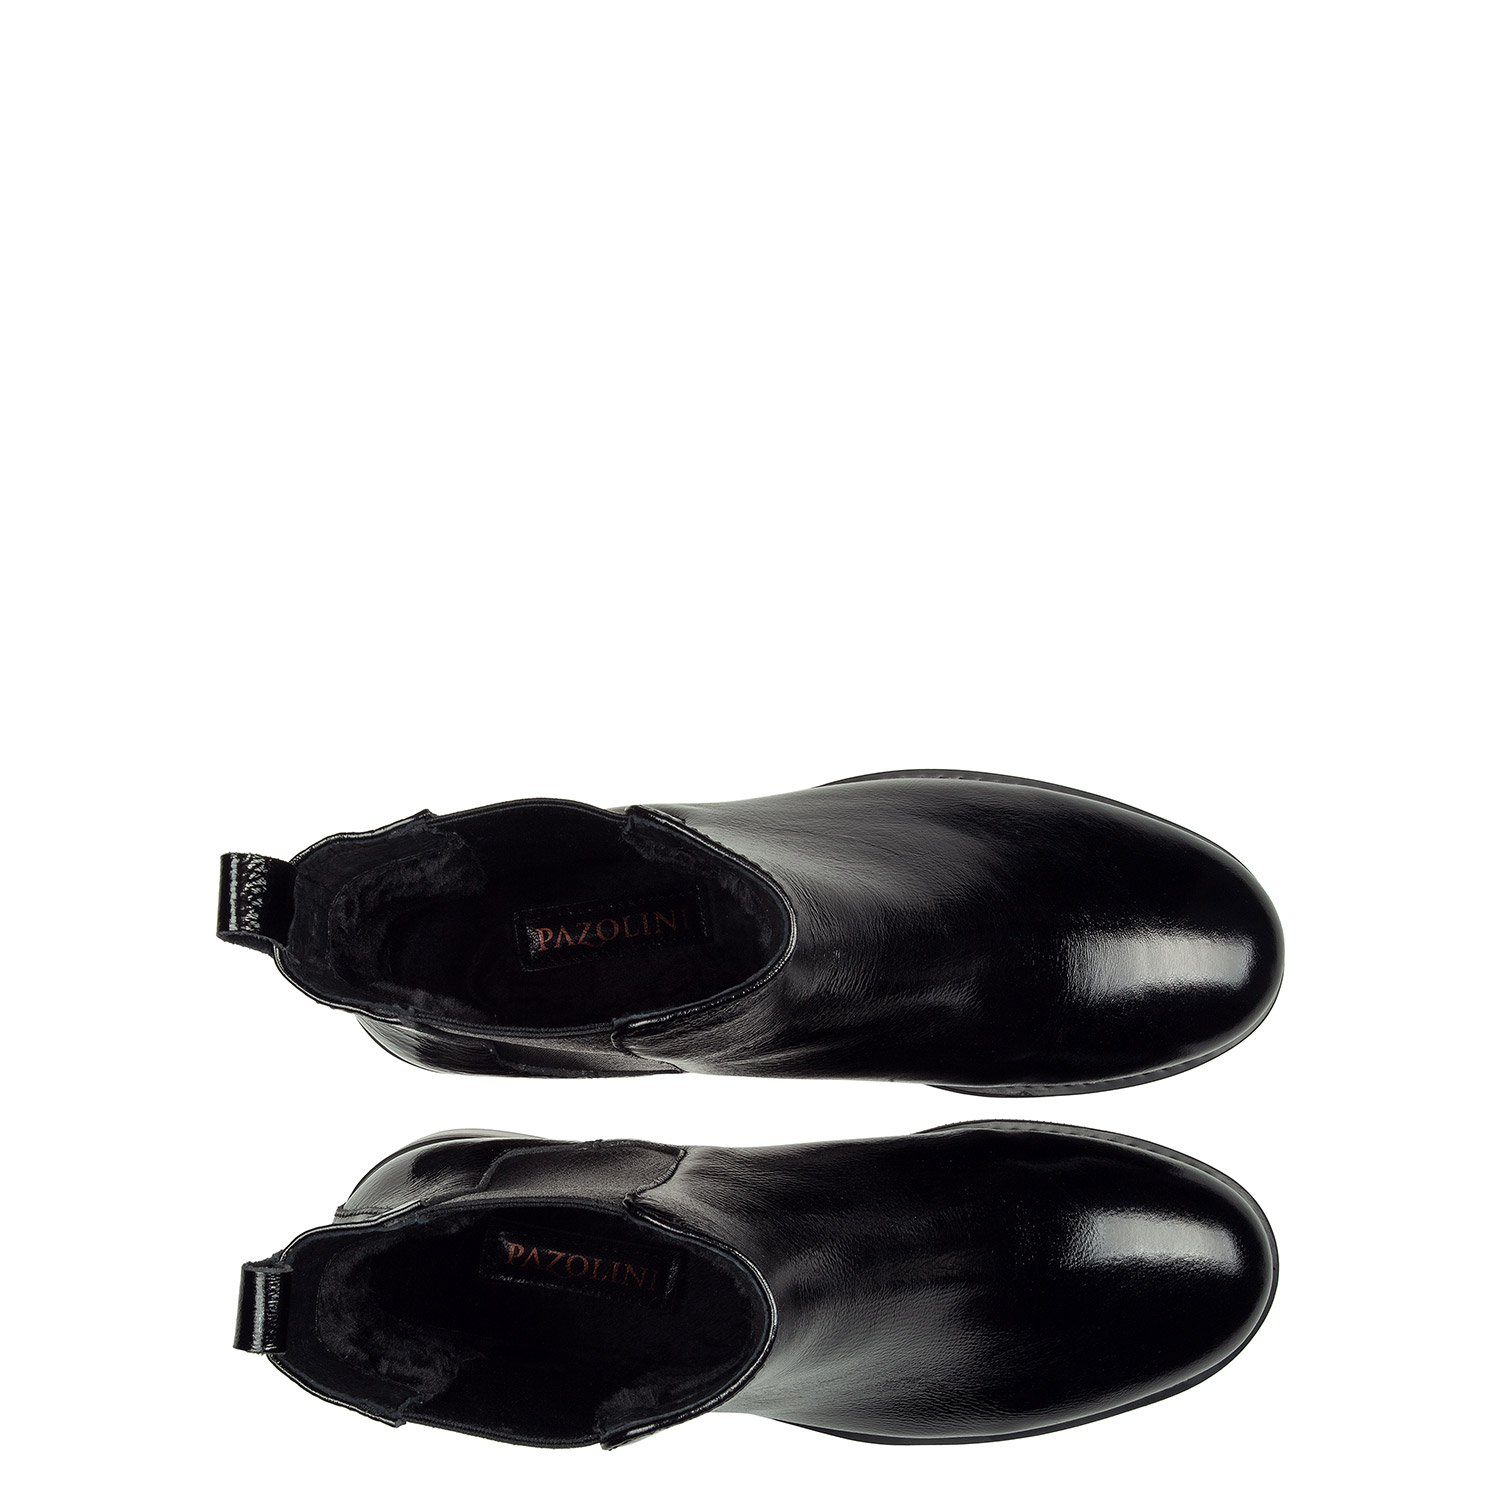 Зимние ботинки Челси из натуральной кожи и с эластичной вставкой PAZOLINI JH-ILM5-1